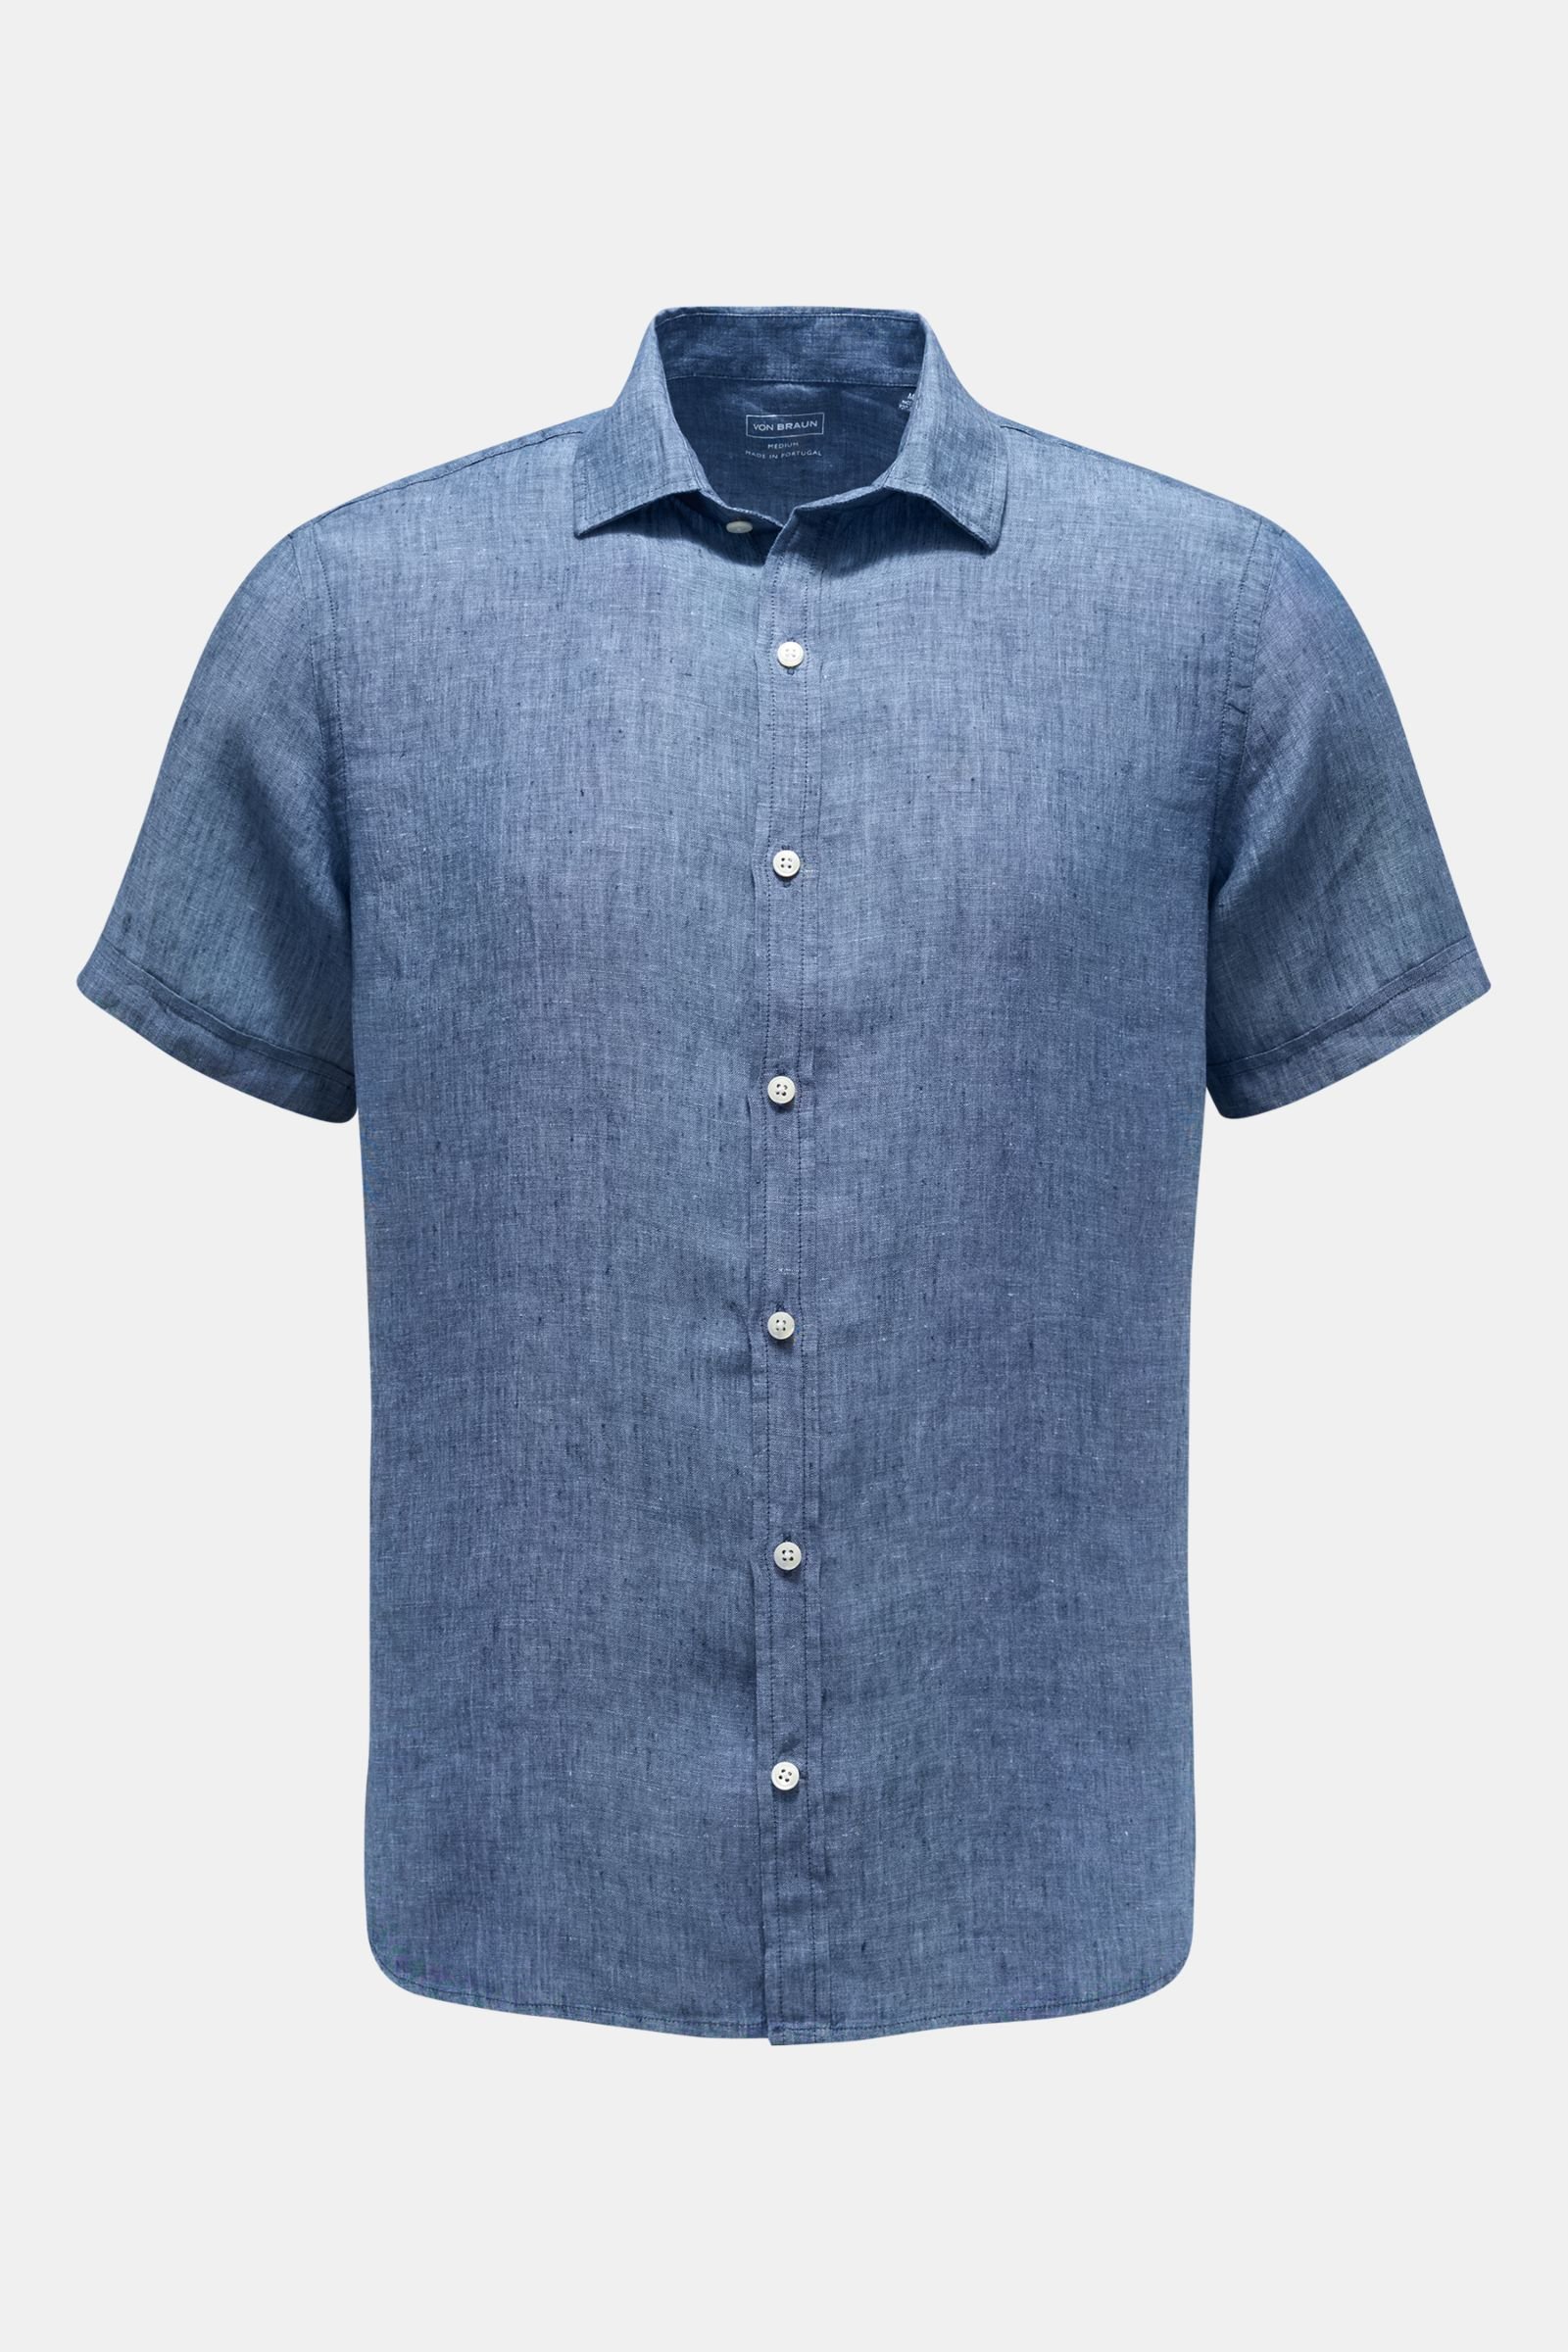 Linen short sleeve shirt Kent collar navy